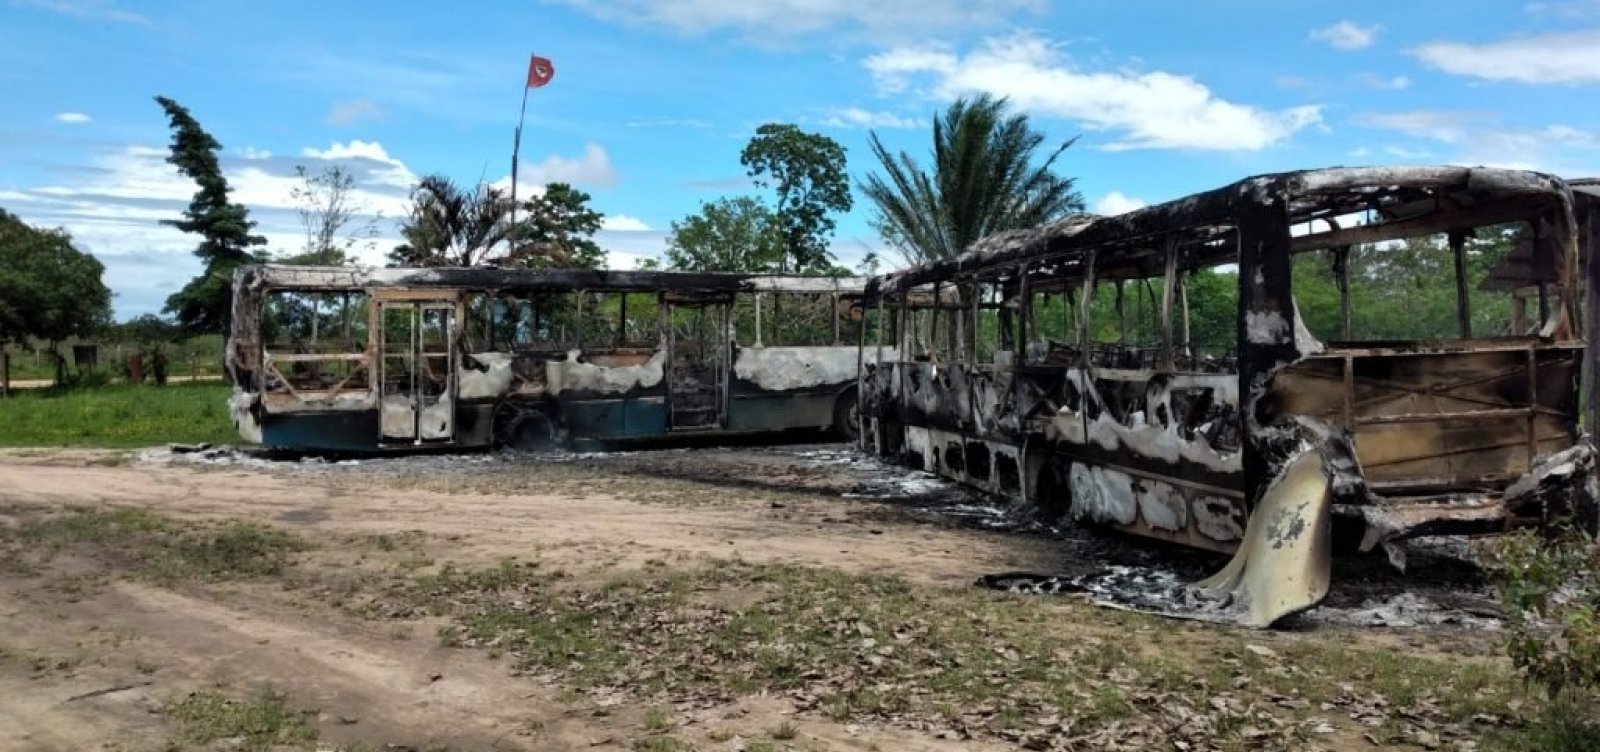 Assentamento do MST sofre ataque armado em Prado, na Bahia 